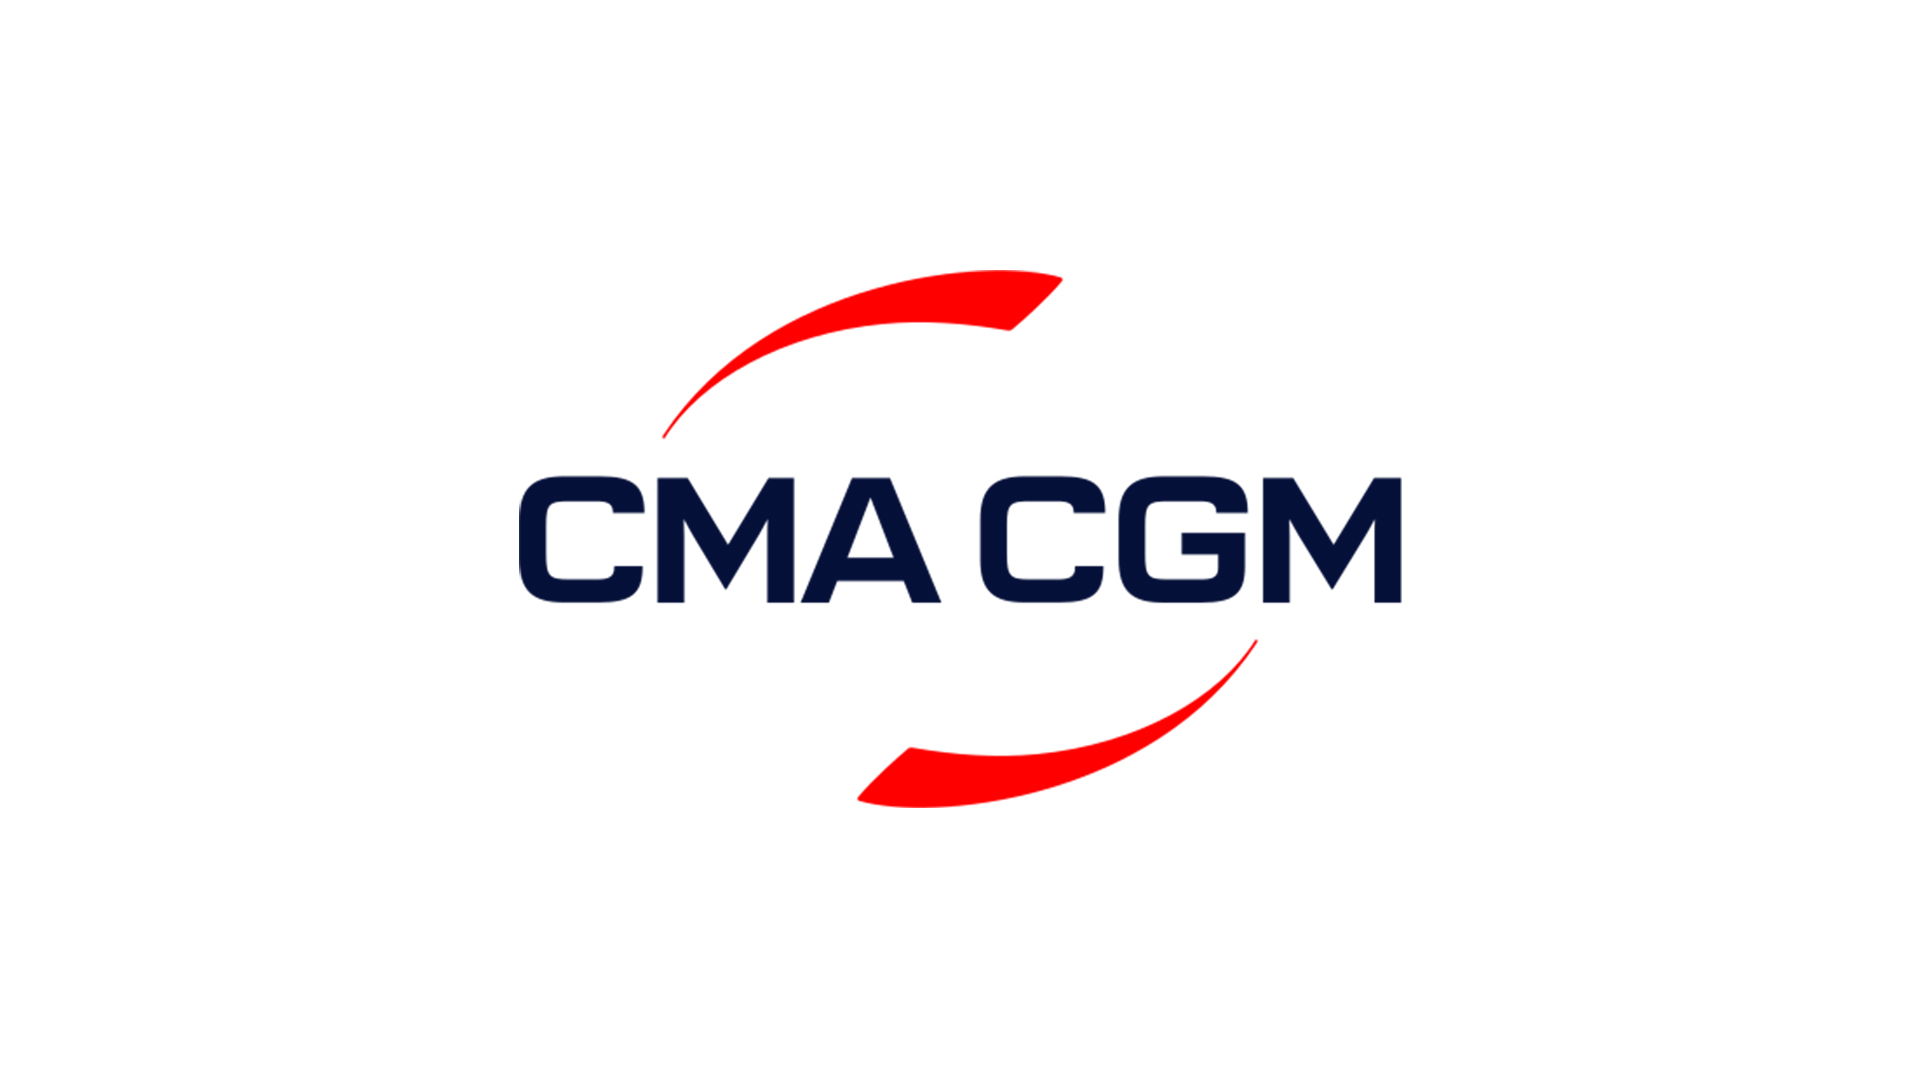 CMA CGM, müşterilerine yönelik ilk sadakat programı olan SEA REWARD’ı geliştirdi ve hayata geçirdi.